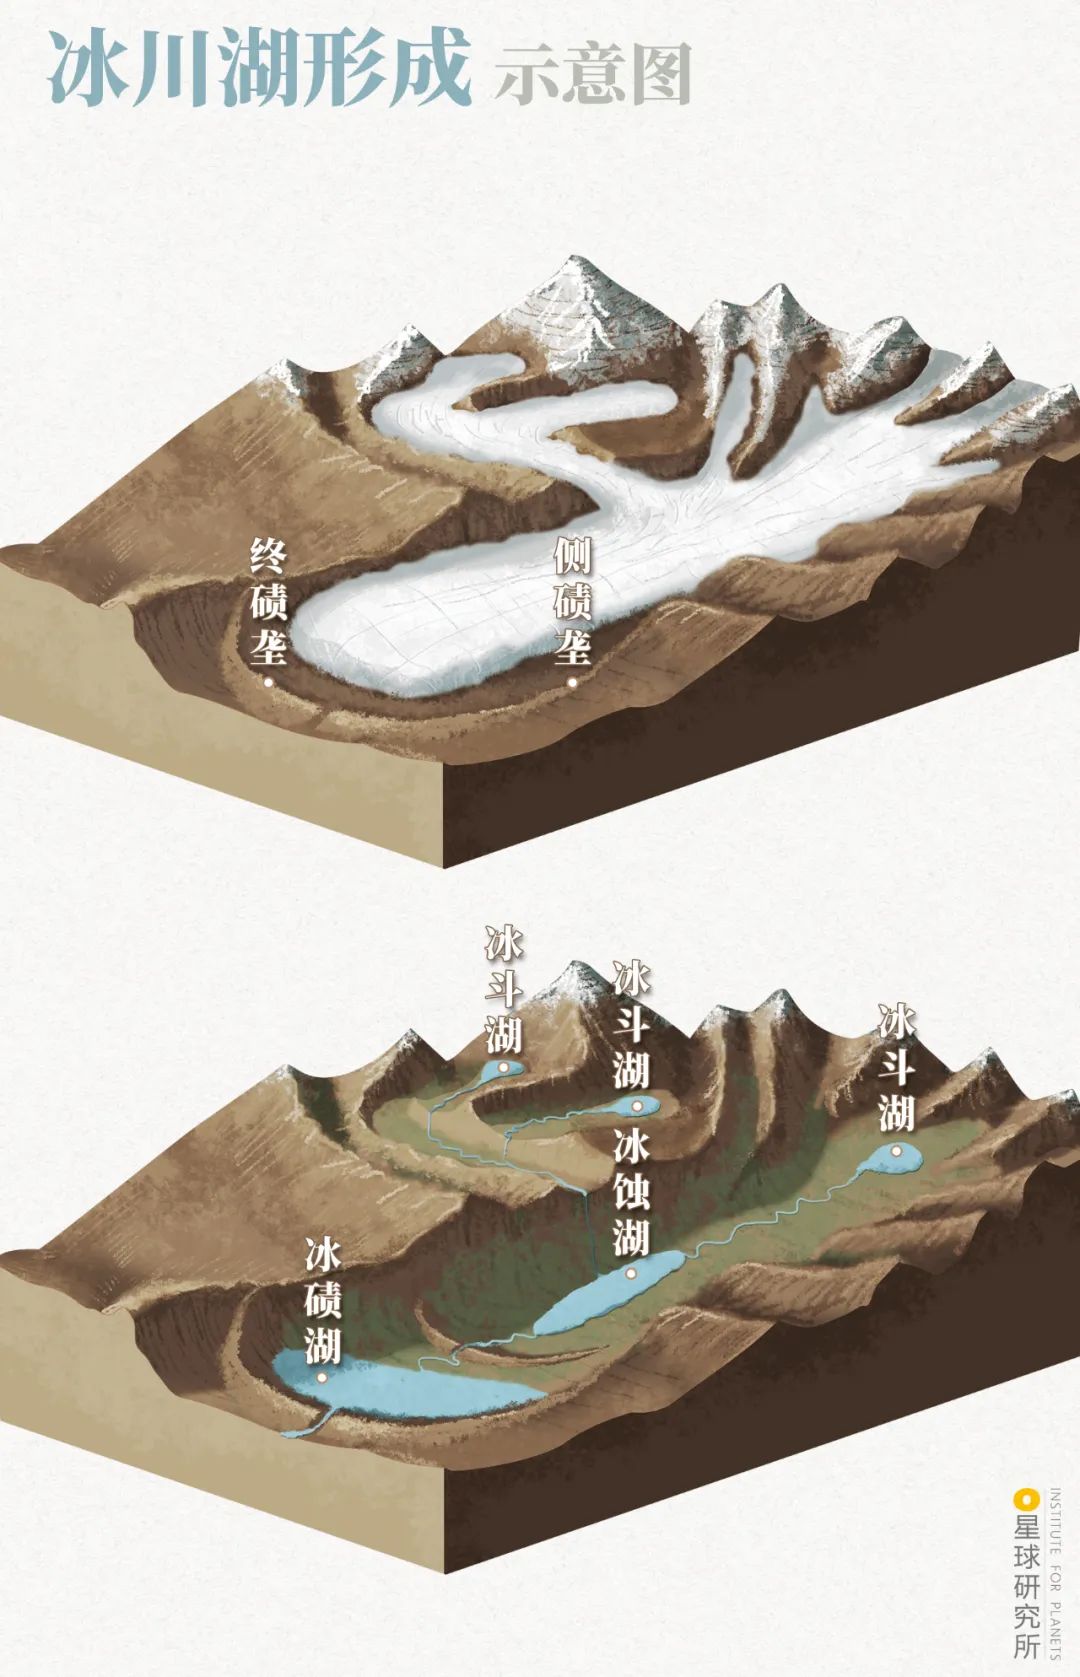 描述冰碛垄的形成过程图片